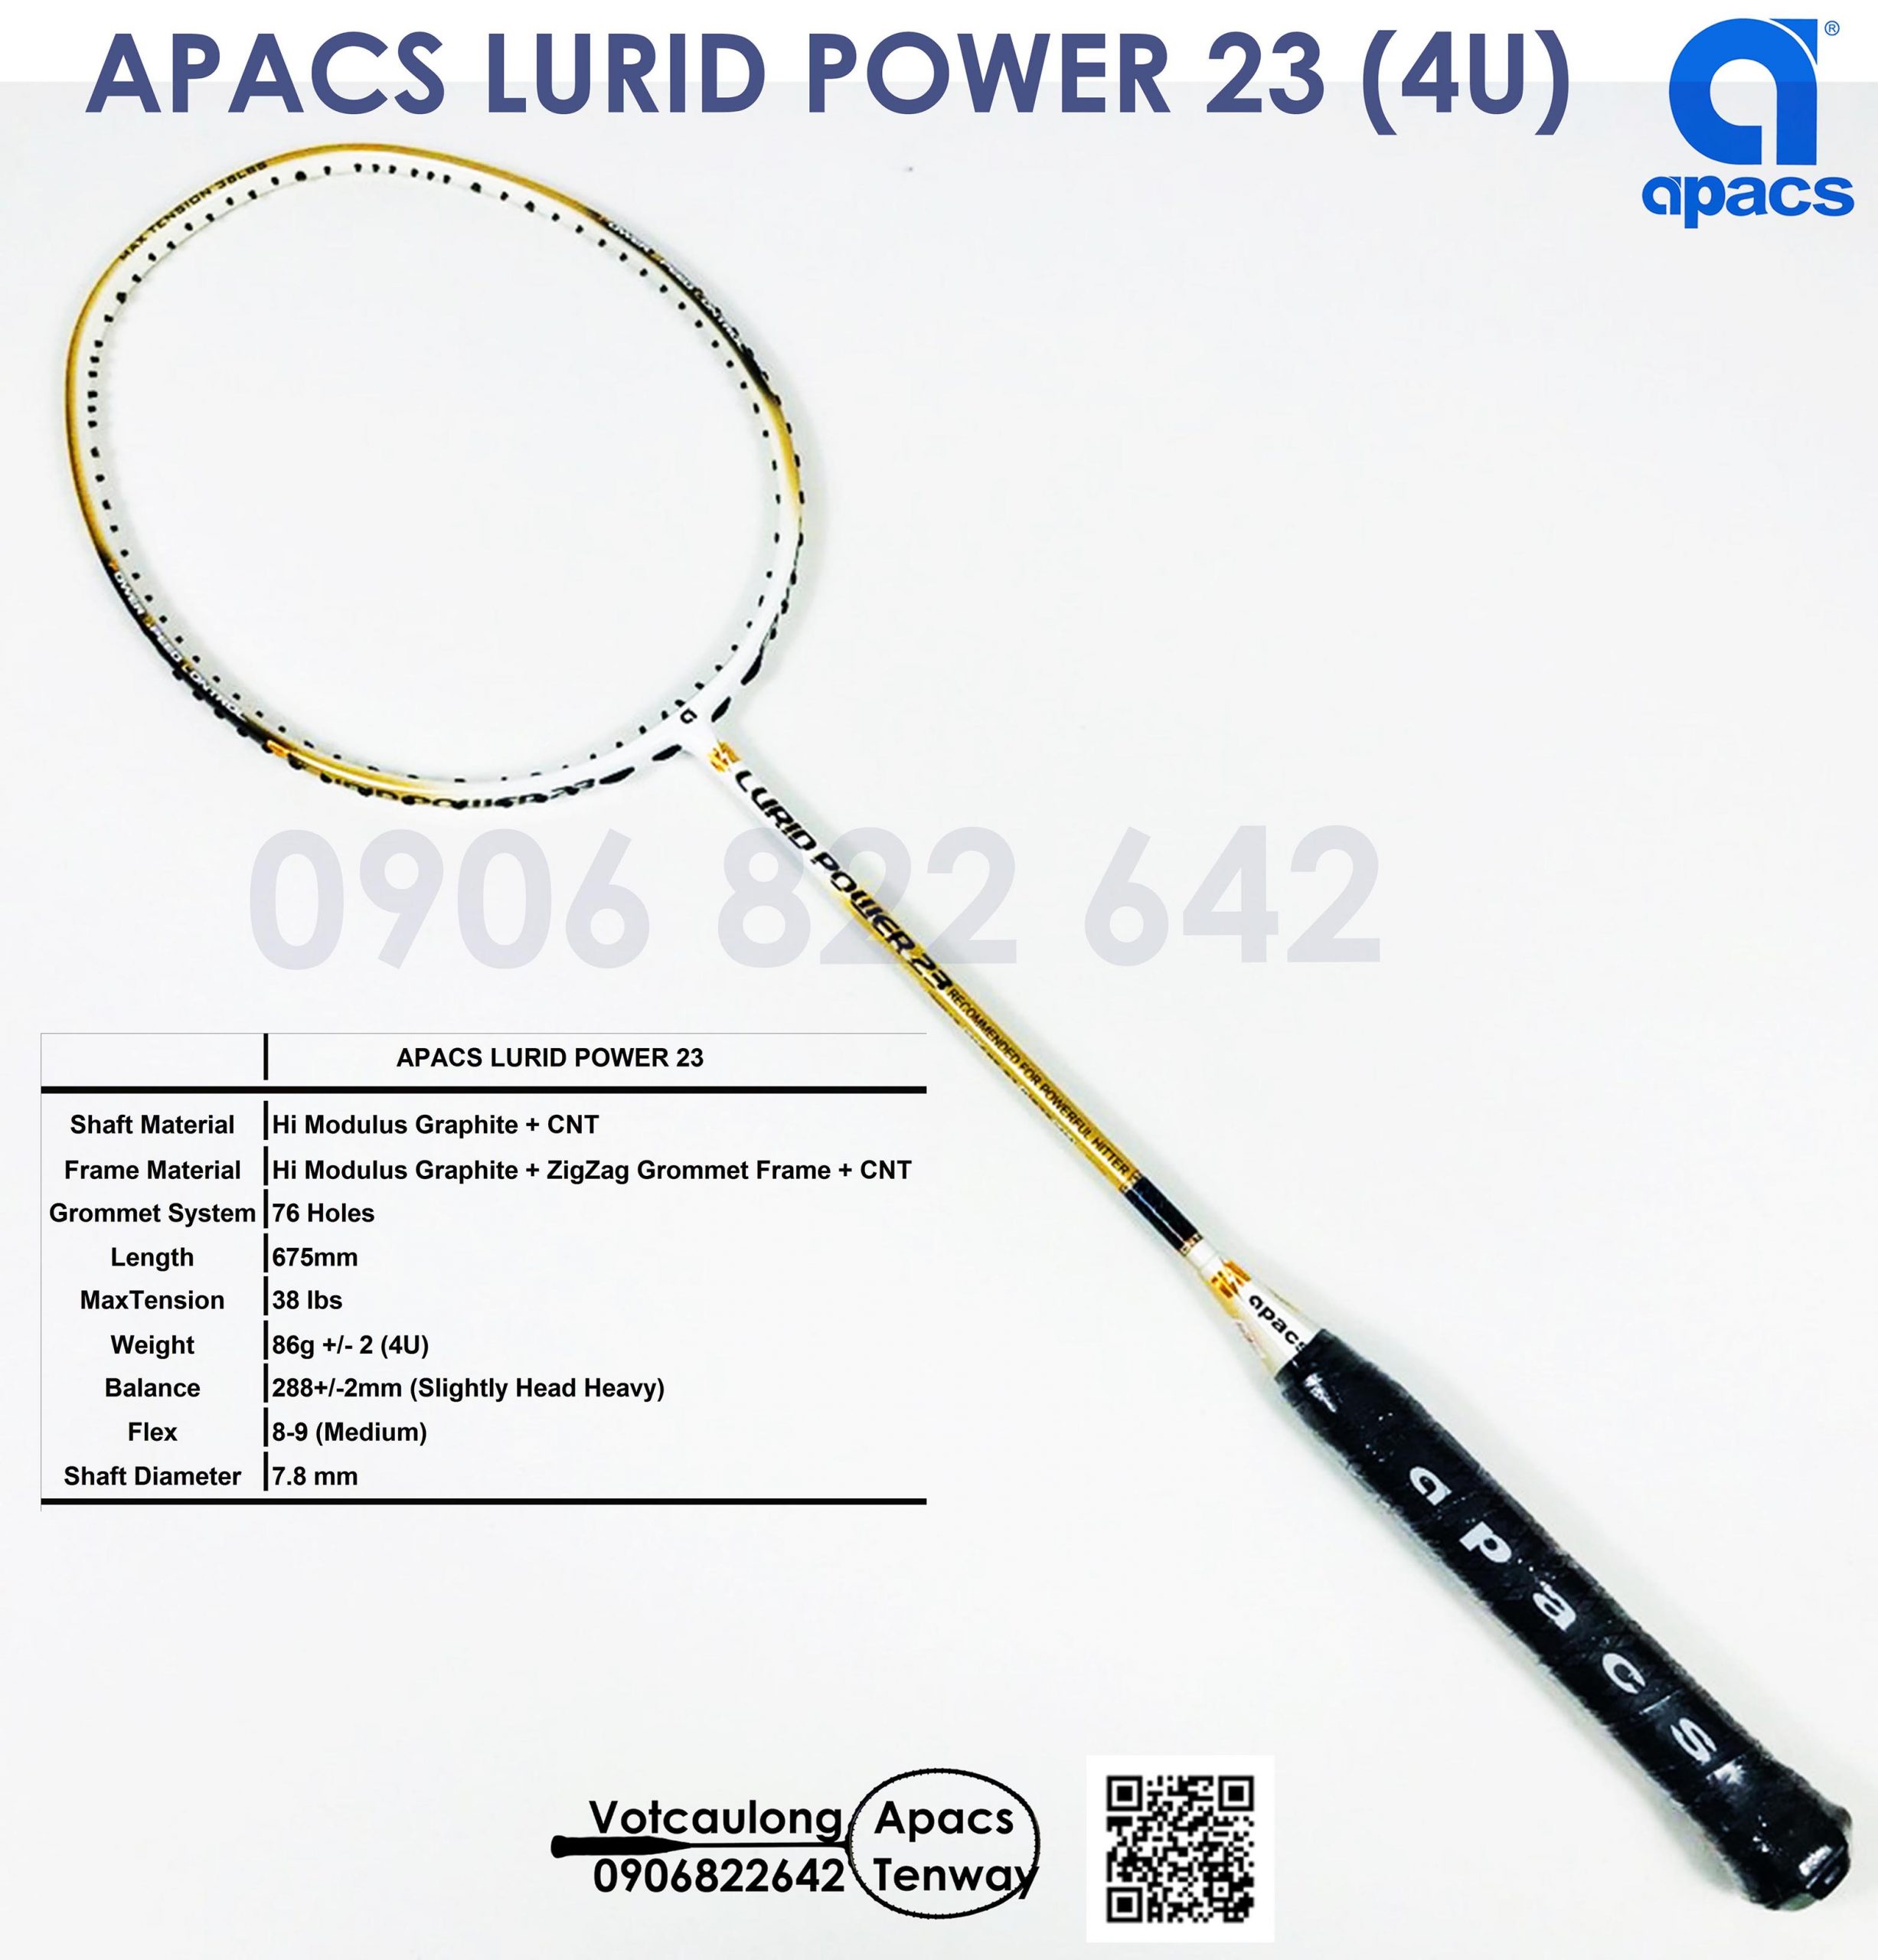 Vợt cầu lông Apacs Lurid Power thực sự là một sản phẩm hoàn hảo cho những tay vợt đam mê đập cầu. Với thiết kế độc đáo và đầy năng lượng, bạn sẽ có trải nghiệm đầy thú vị khi sử dụng chiếc vợt này. Hãy xem video của chúng tôi để thấy rõ hơn về sự đặc biệt của sản phẩm này!